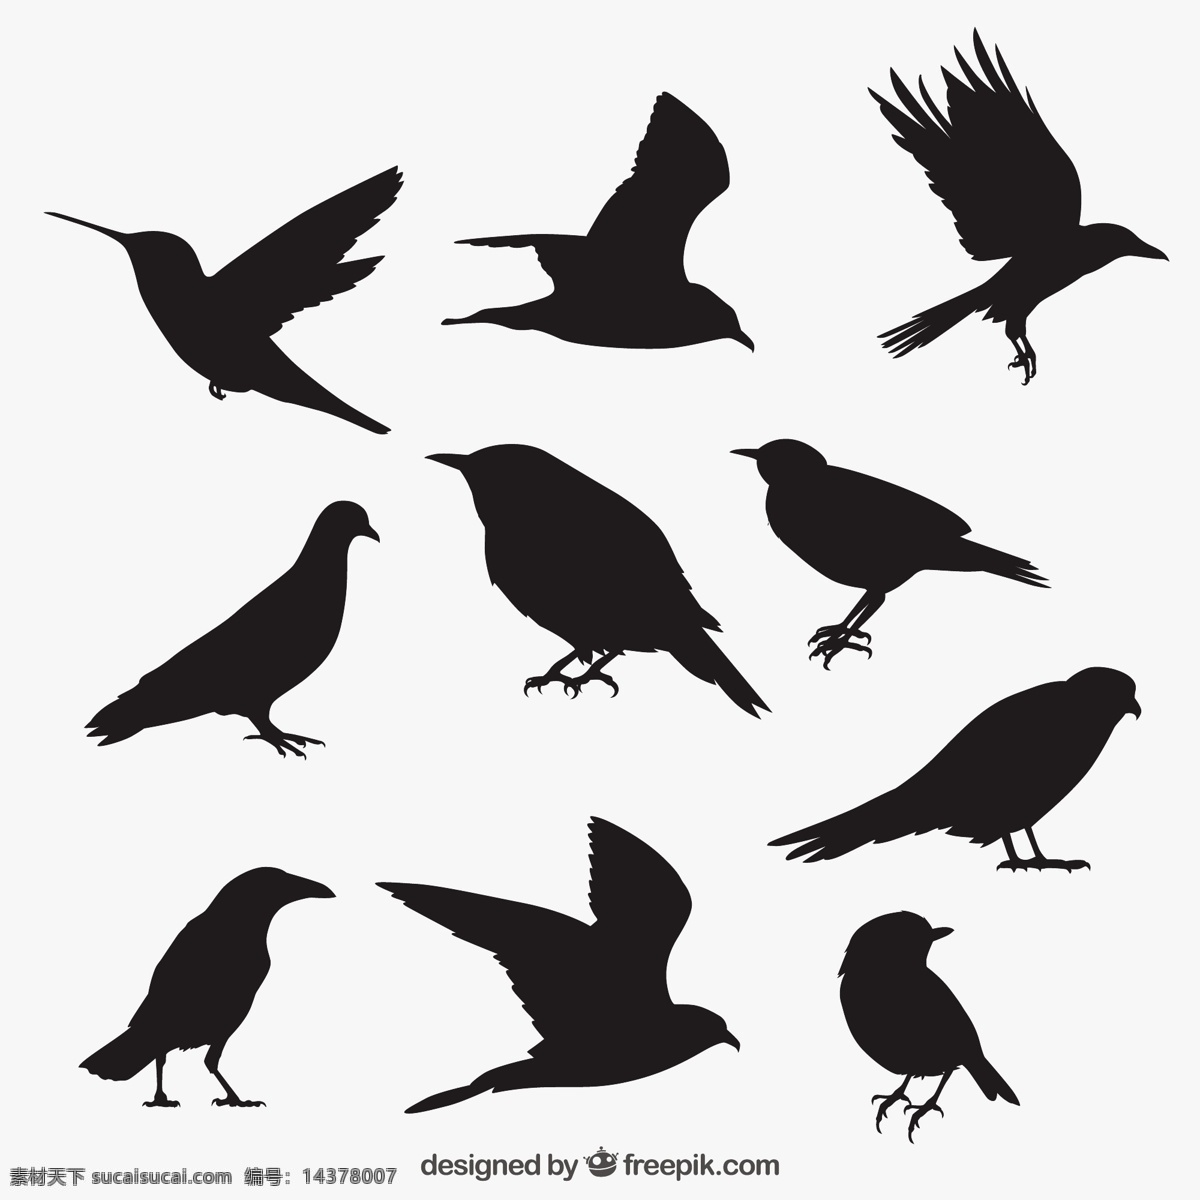 鸟的轮廓收藏 鸟 自然 动物 翅膀 羽毛 丛林 黑 动物园 鸽子 乌鸦 轮廓 野生 野生动物 采集 麻雀的羽毛 概述 白色